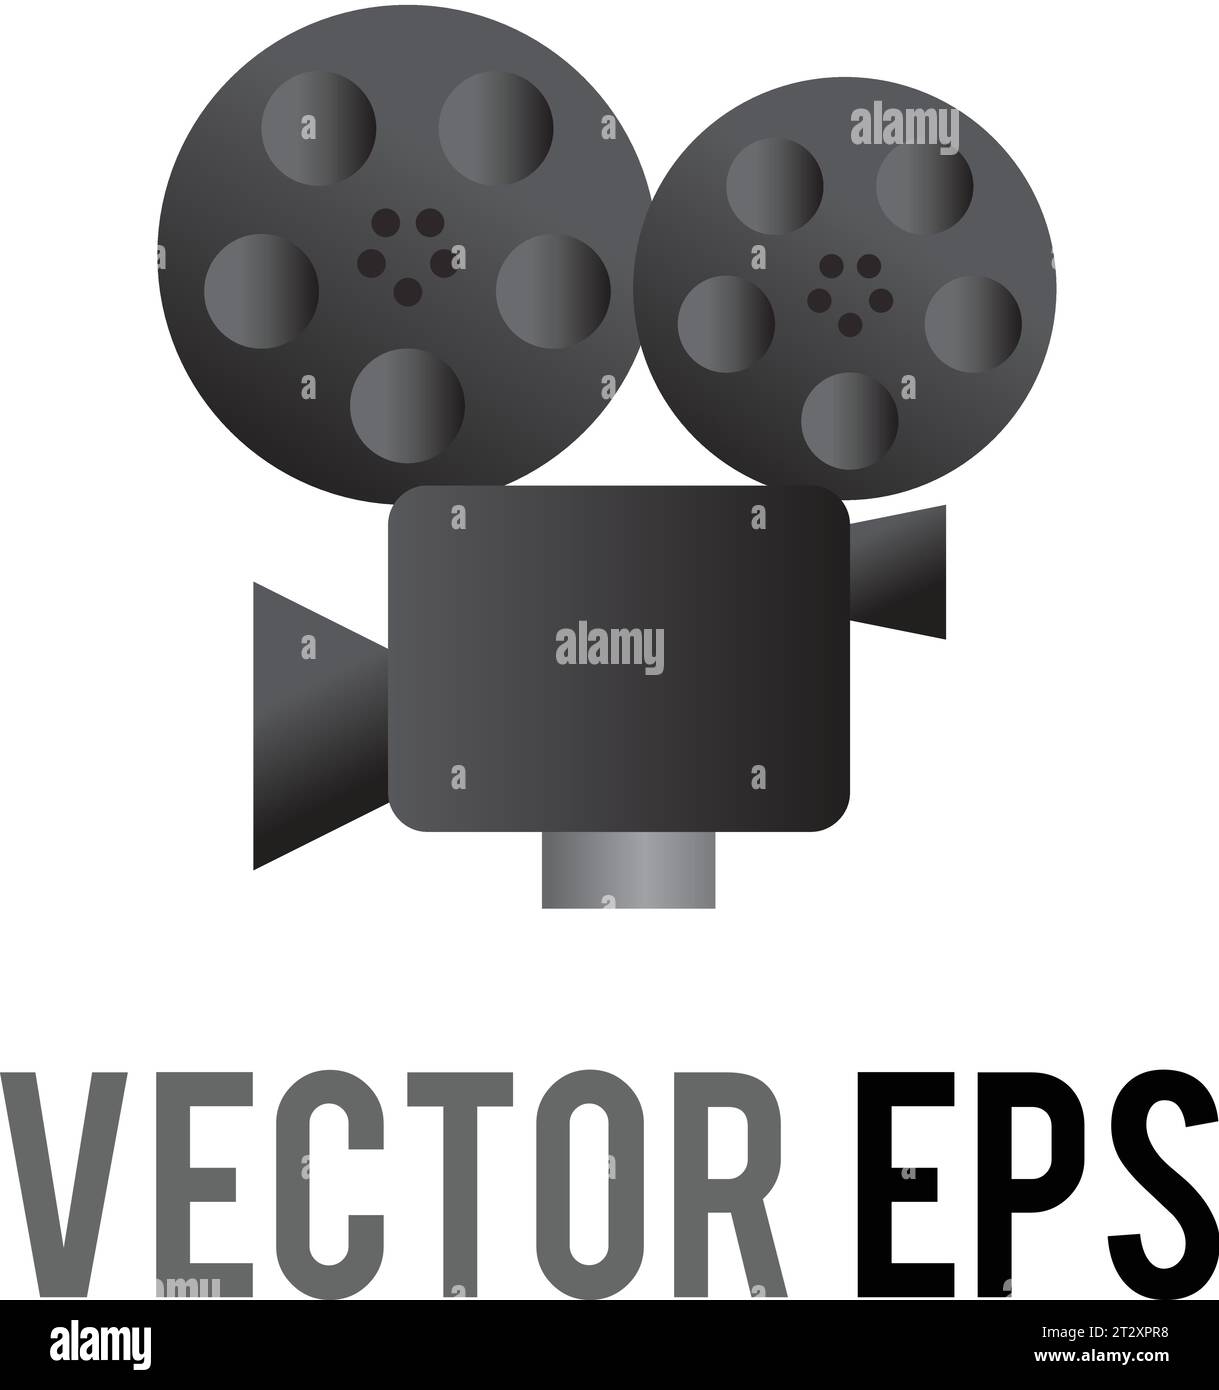 L'icône de caméra vidéo classique vectorielle isolée grise et noire avec deux bobines de film montées, viseur et objectif, utilisée pour le contenu concernant les films, Illustration de Vecteur